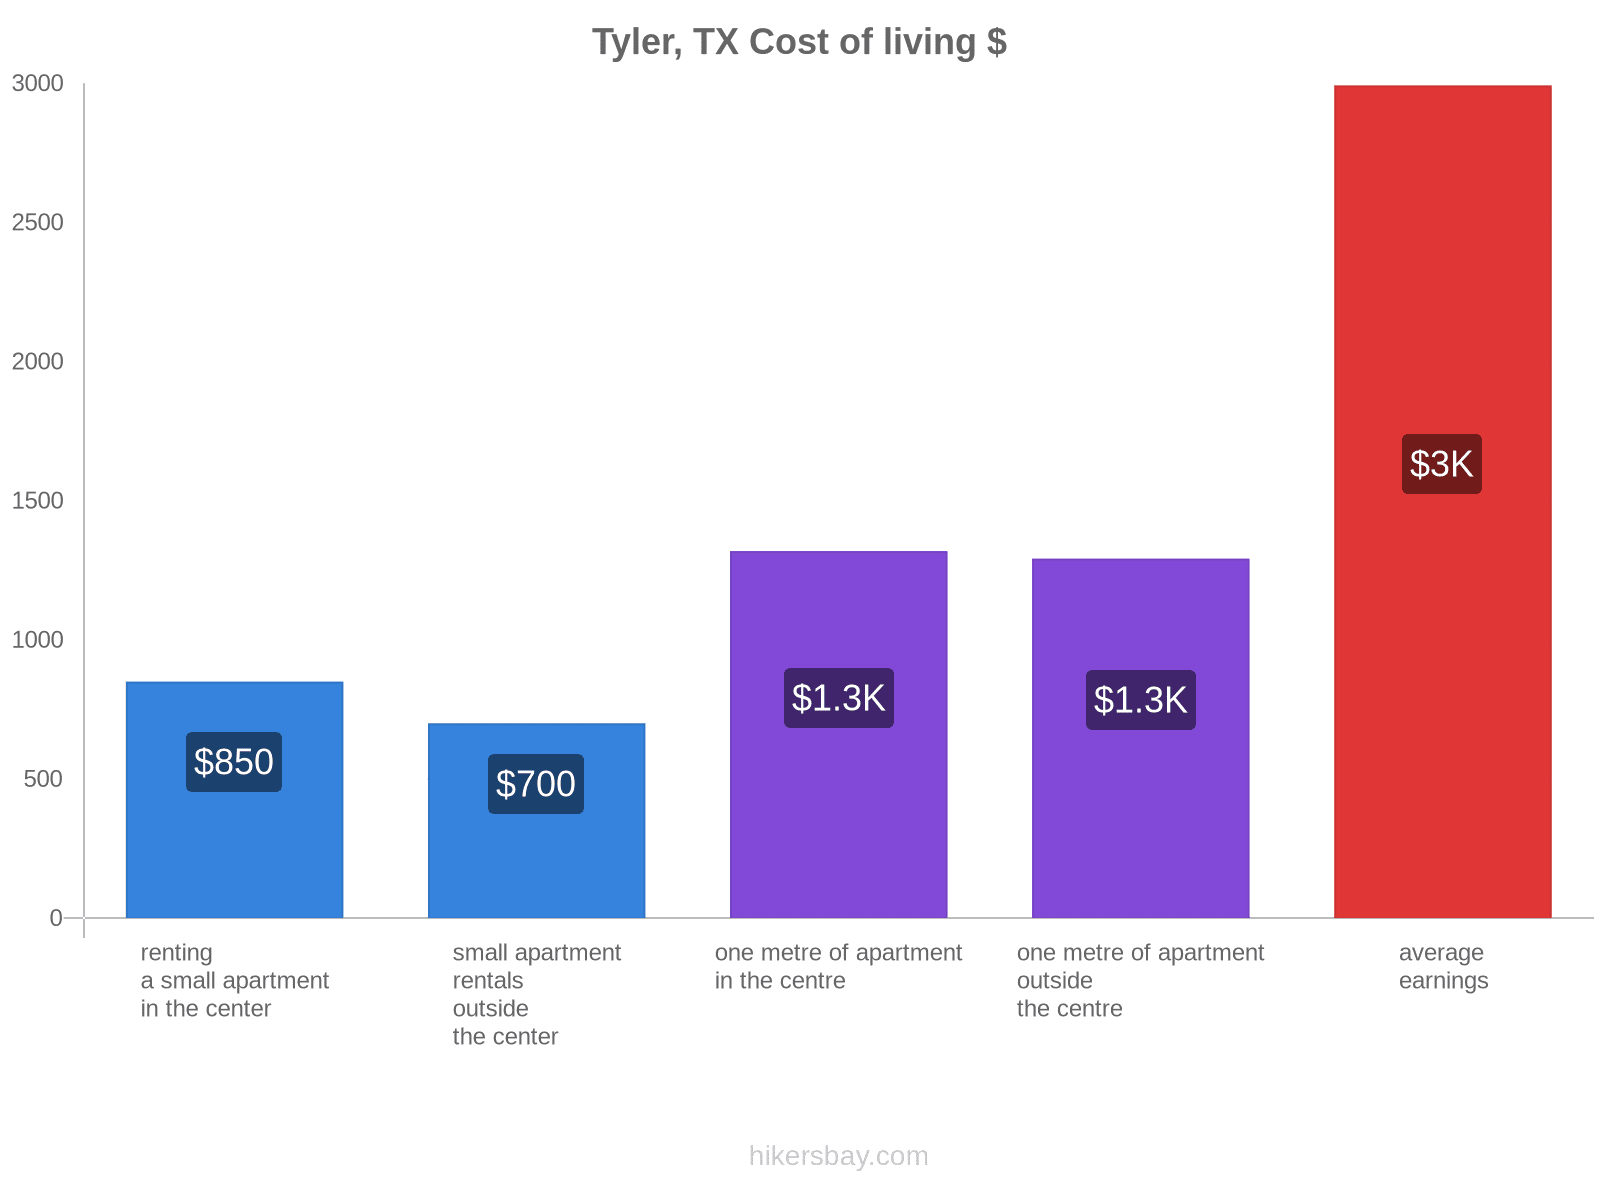 Tyler, TX cost of living hikersbay.com